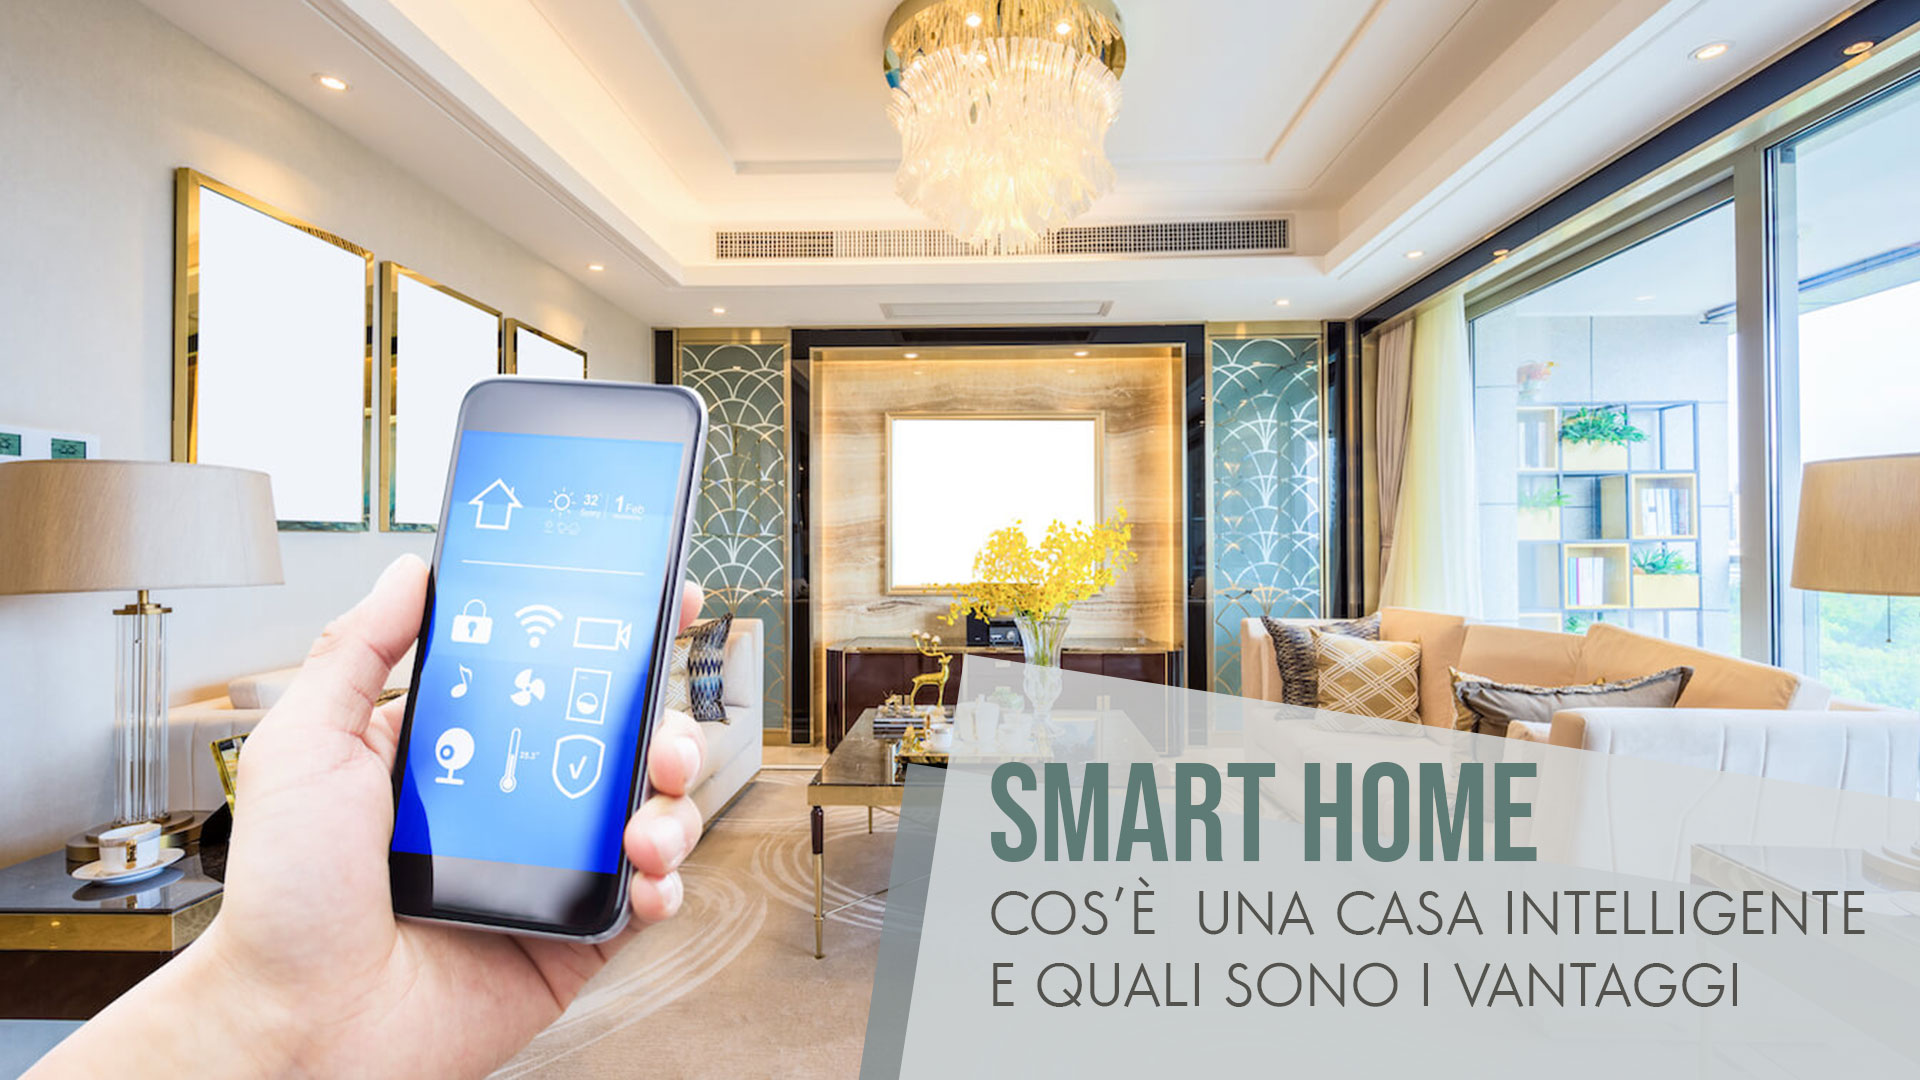 Smart Home: Cos’è una casa intelligente e quali sono i vantaggi